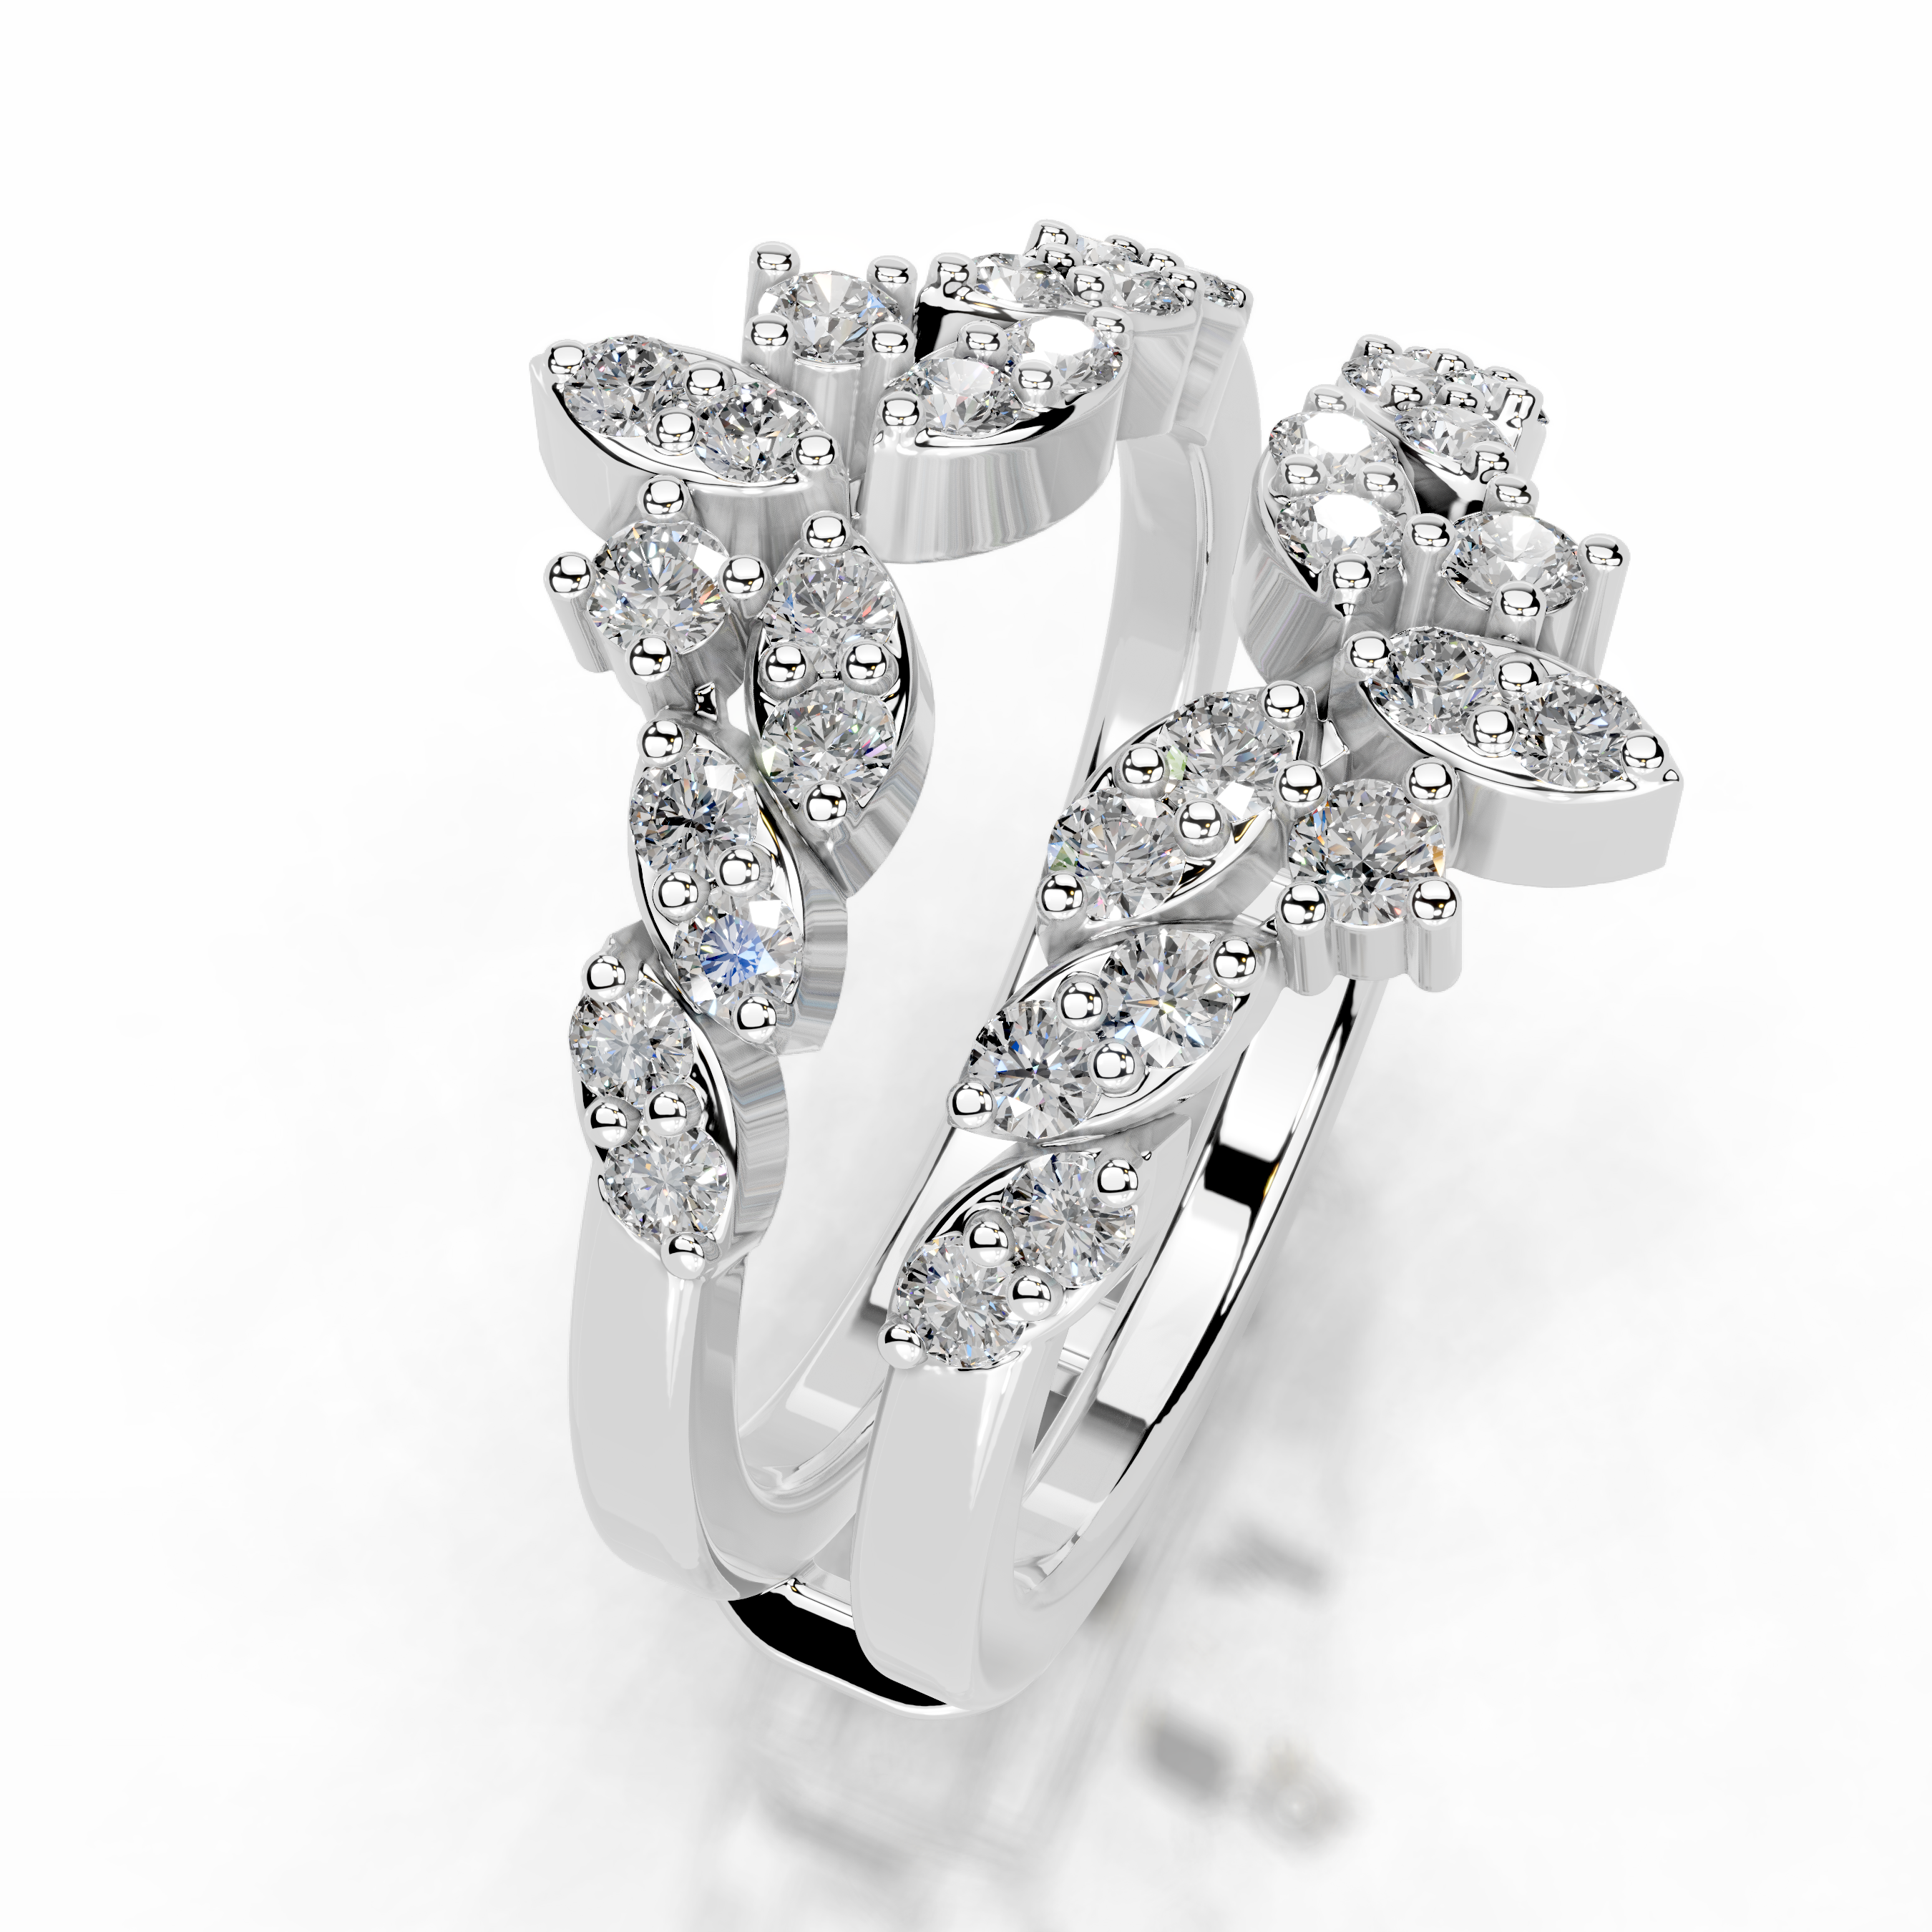 Nikita Diamond Wedding Ring   (0.70 Carat) -Platinum